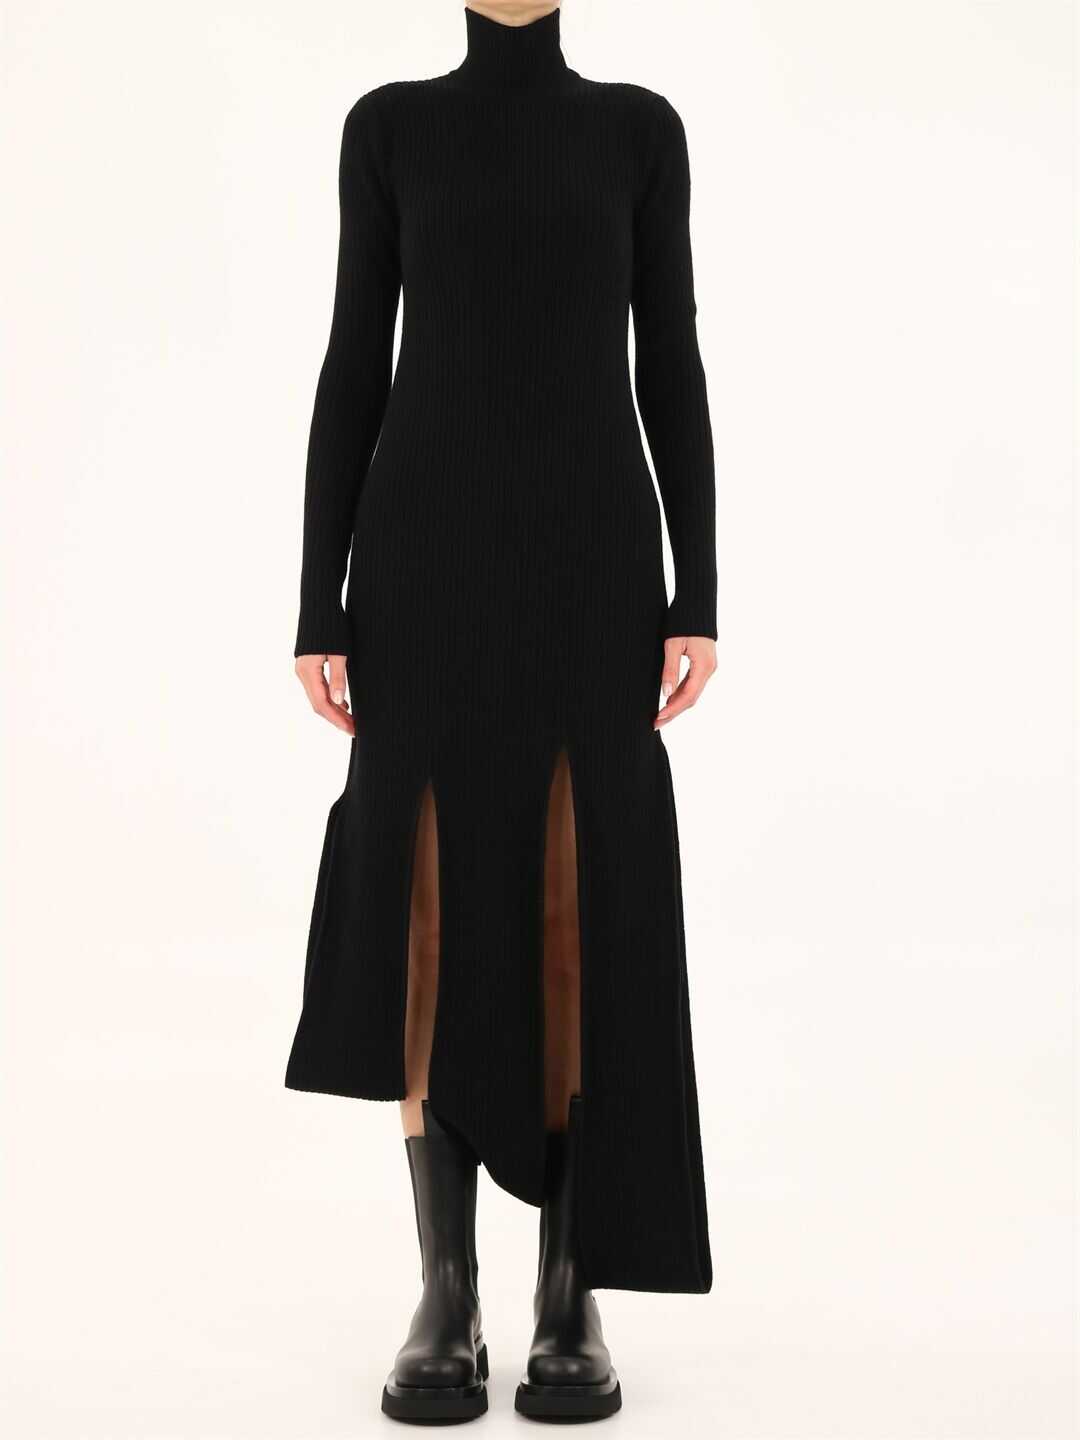 Bottega Veneta Knitted Dress 664144 V0Z90 Black